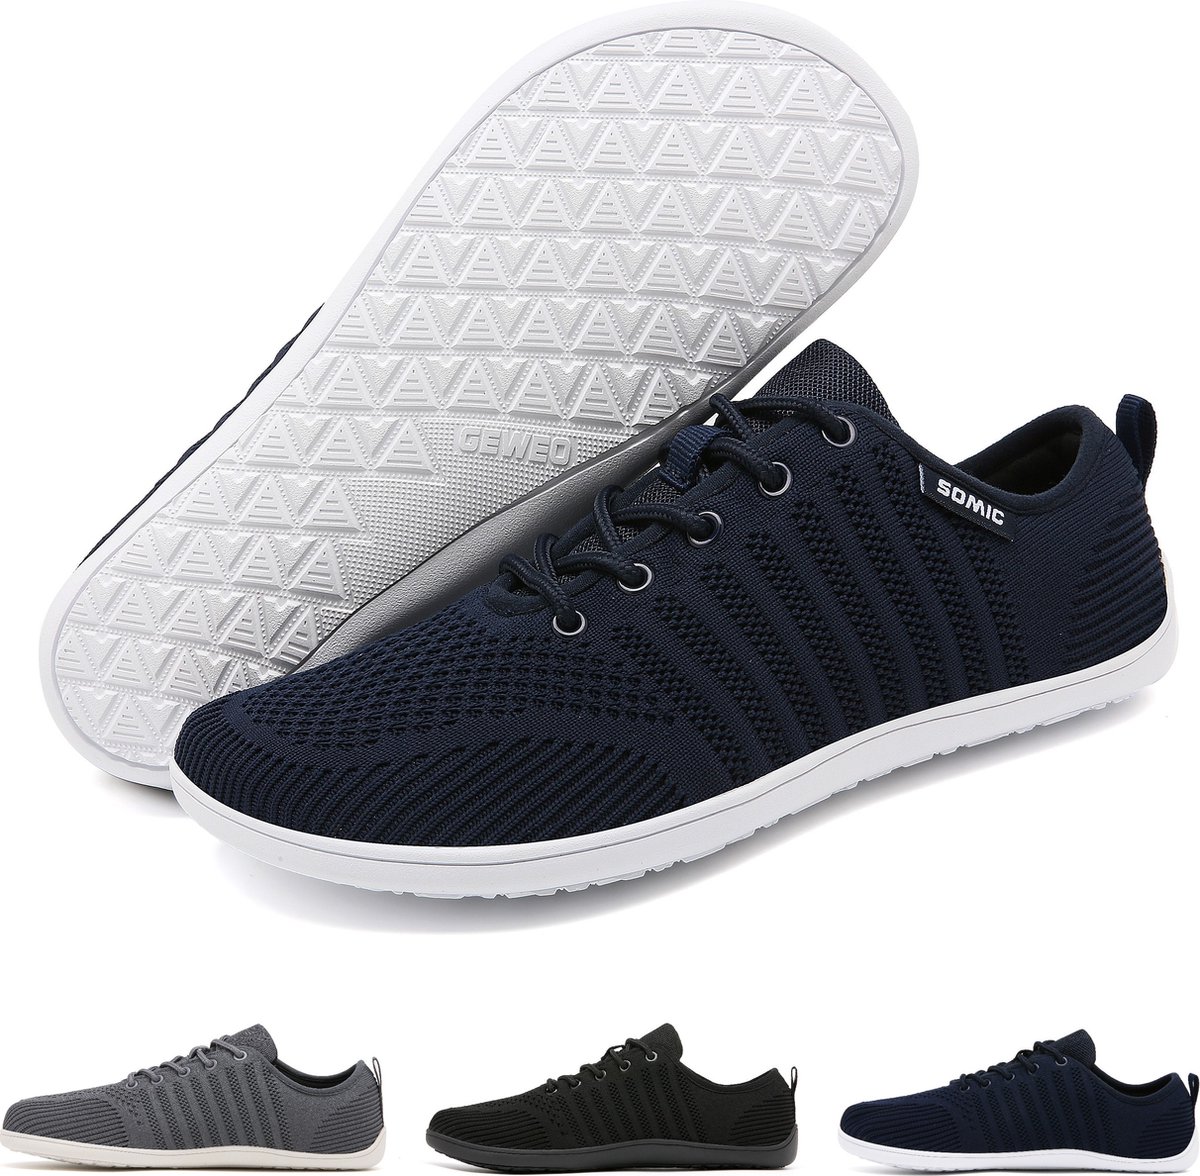 Somic Barefoot Schoenen - Sportschoenen Sneakers - Fitnessschoenen - Hardloopschoenen - Ademend Knit Textiel - Platte Zool - Blauw - Maat 41